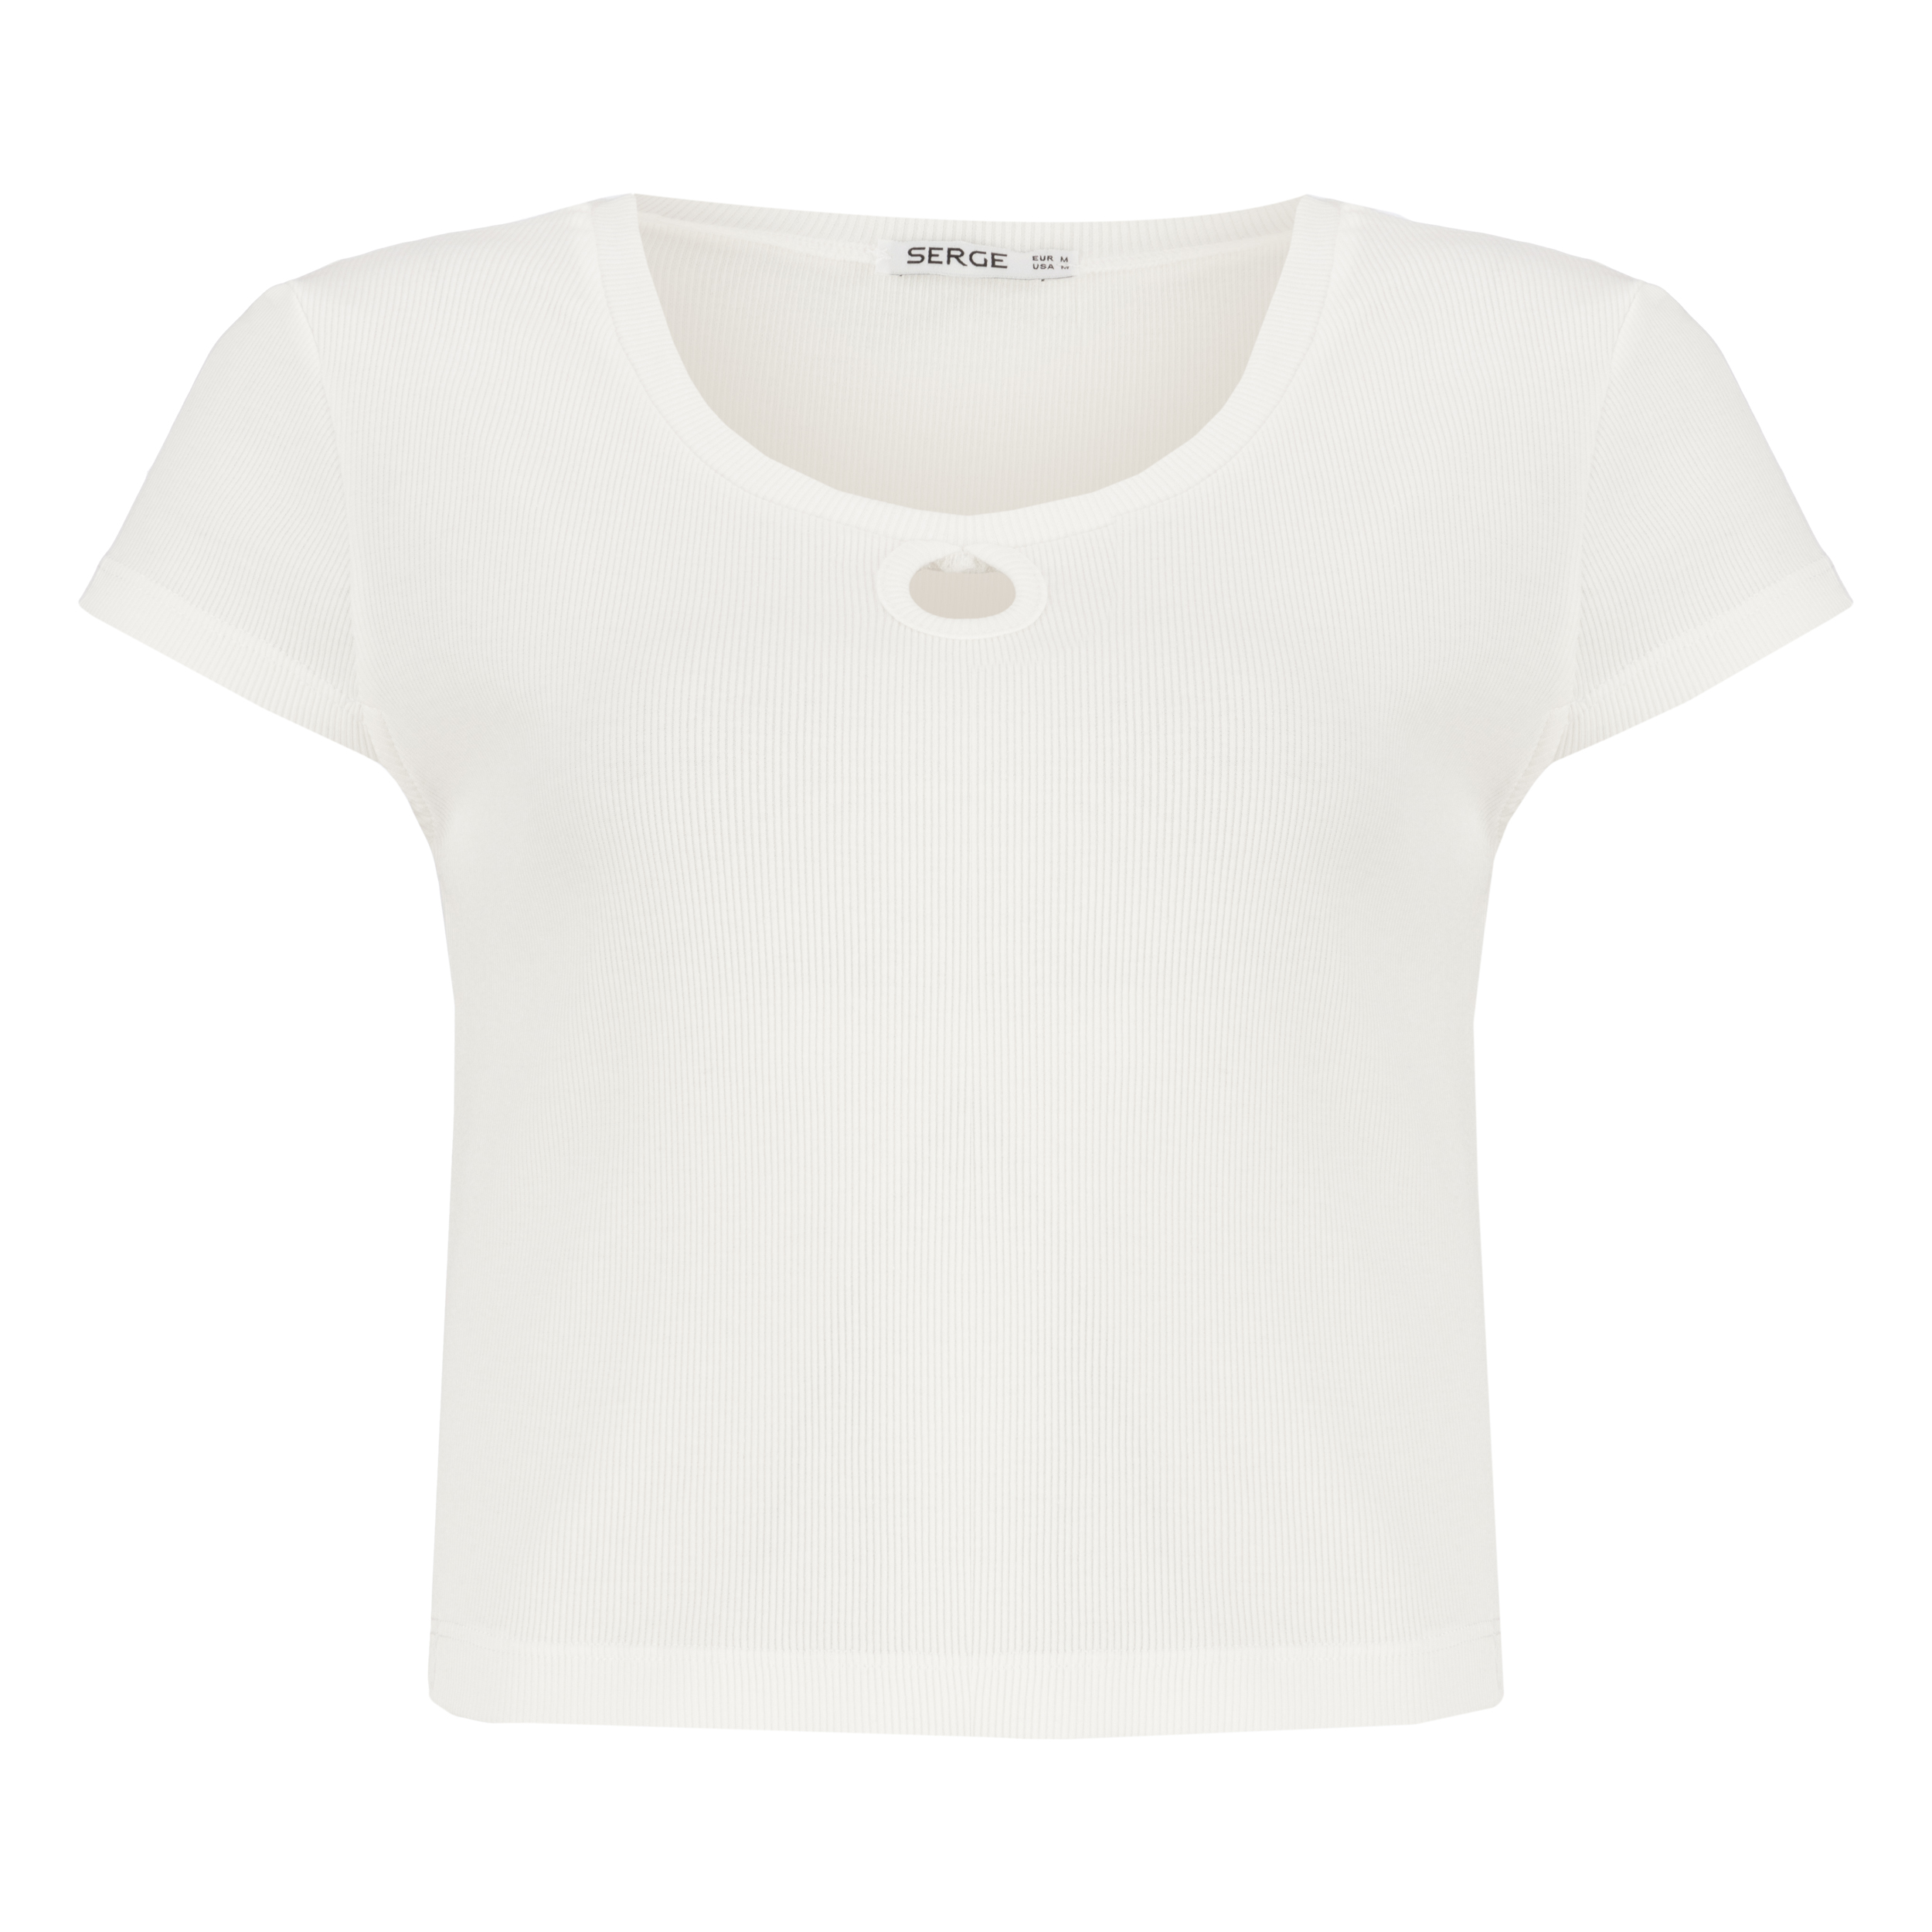 تی شرت آستین کوتاه زنانه سرژه مدل 203503 رنگ سفید